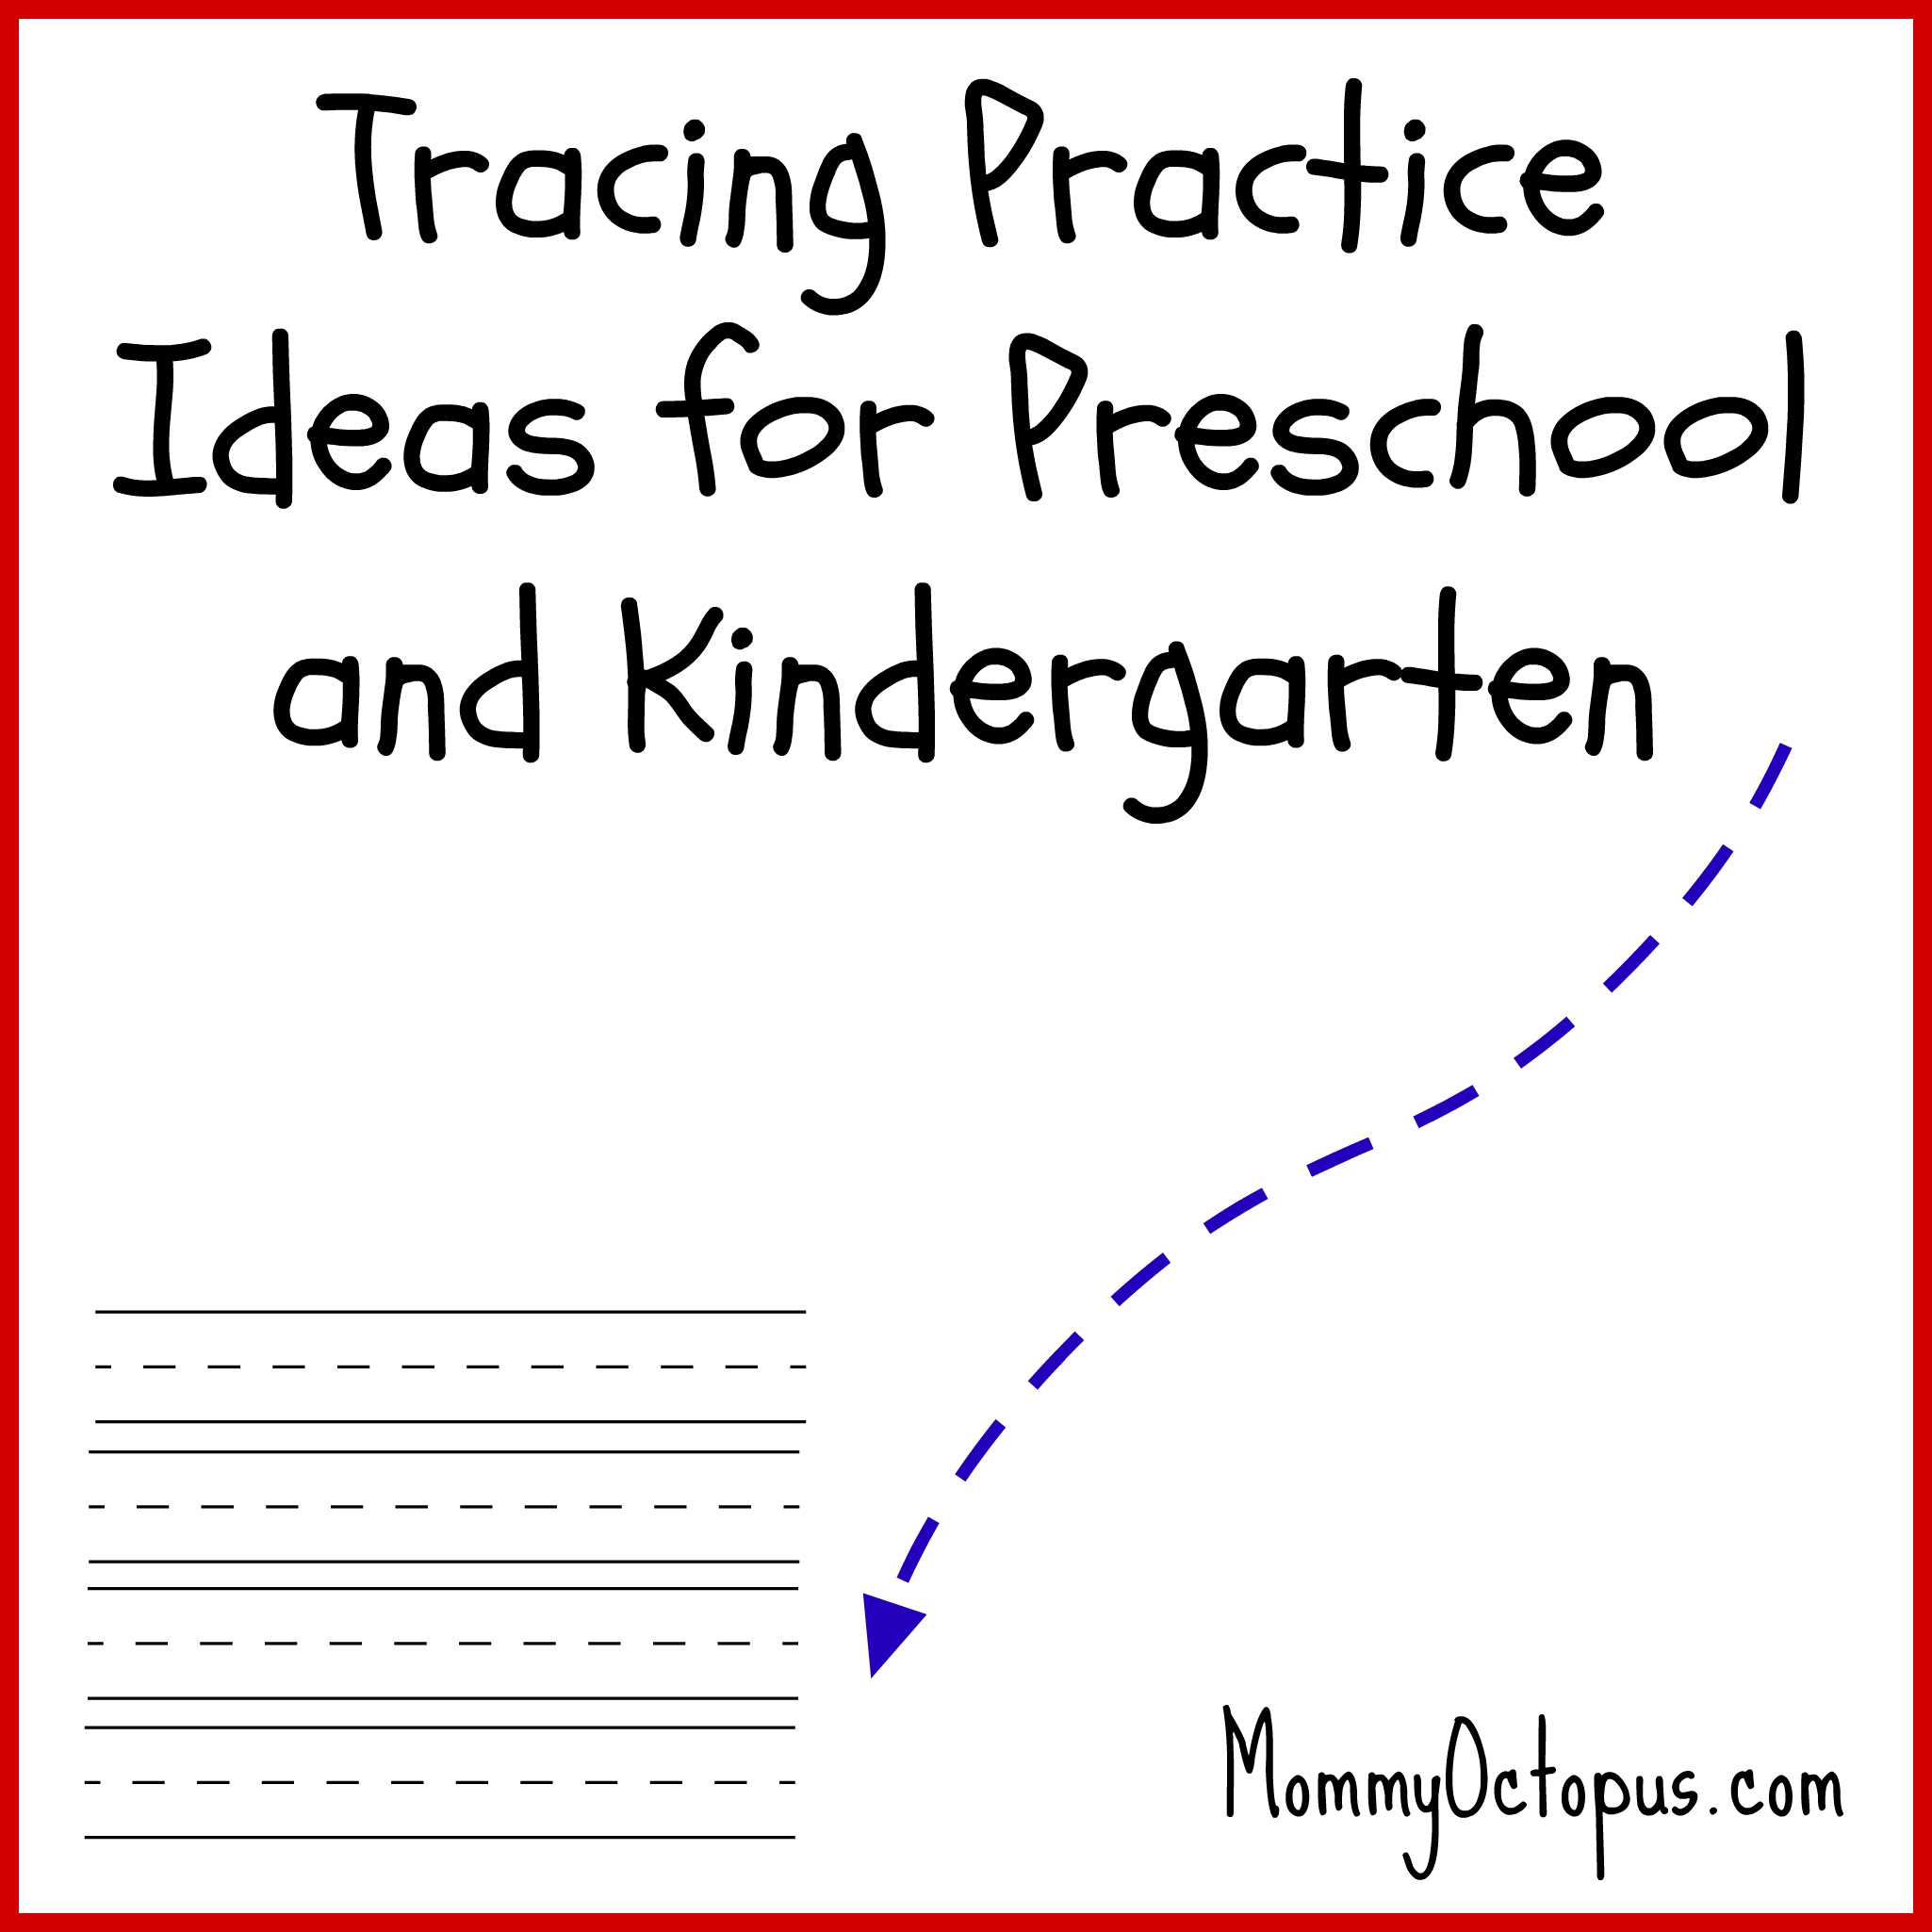 tracing-practice-for-preschool-and-kindergarten-students